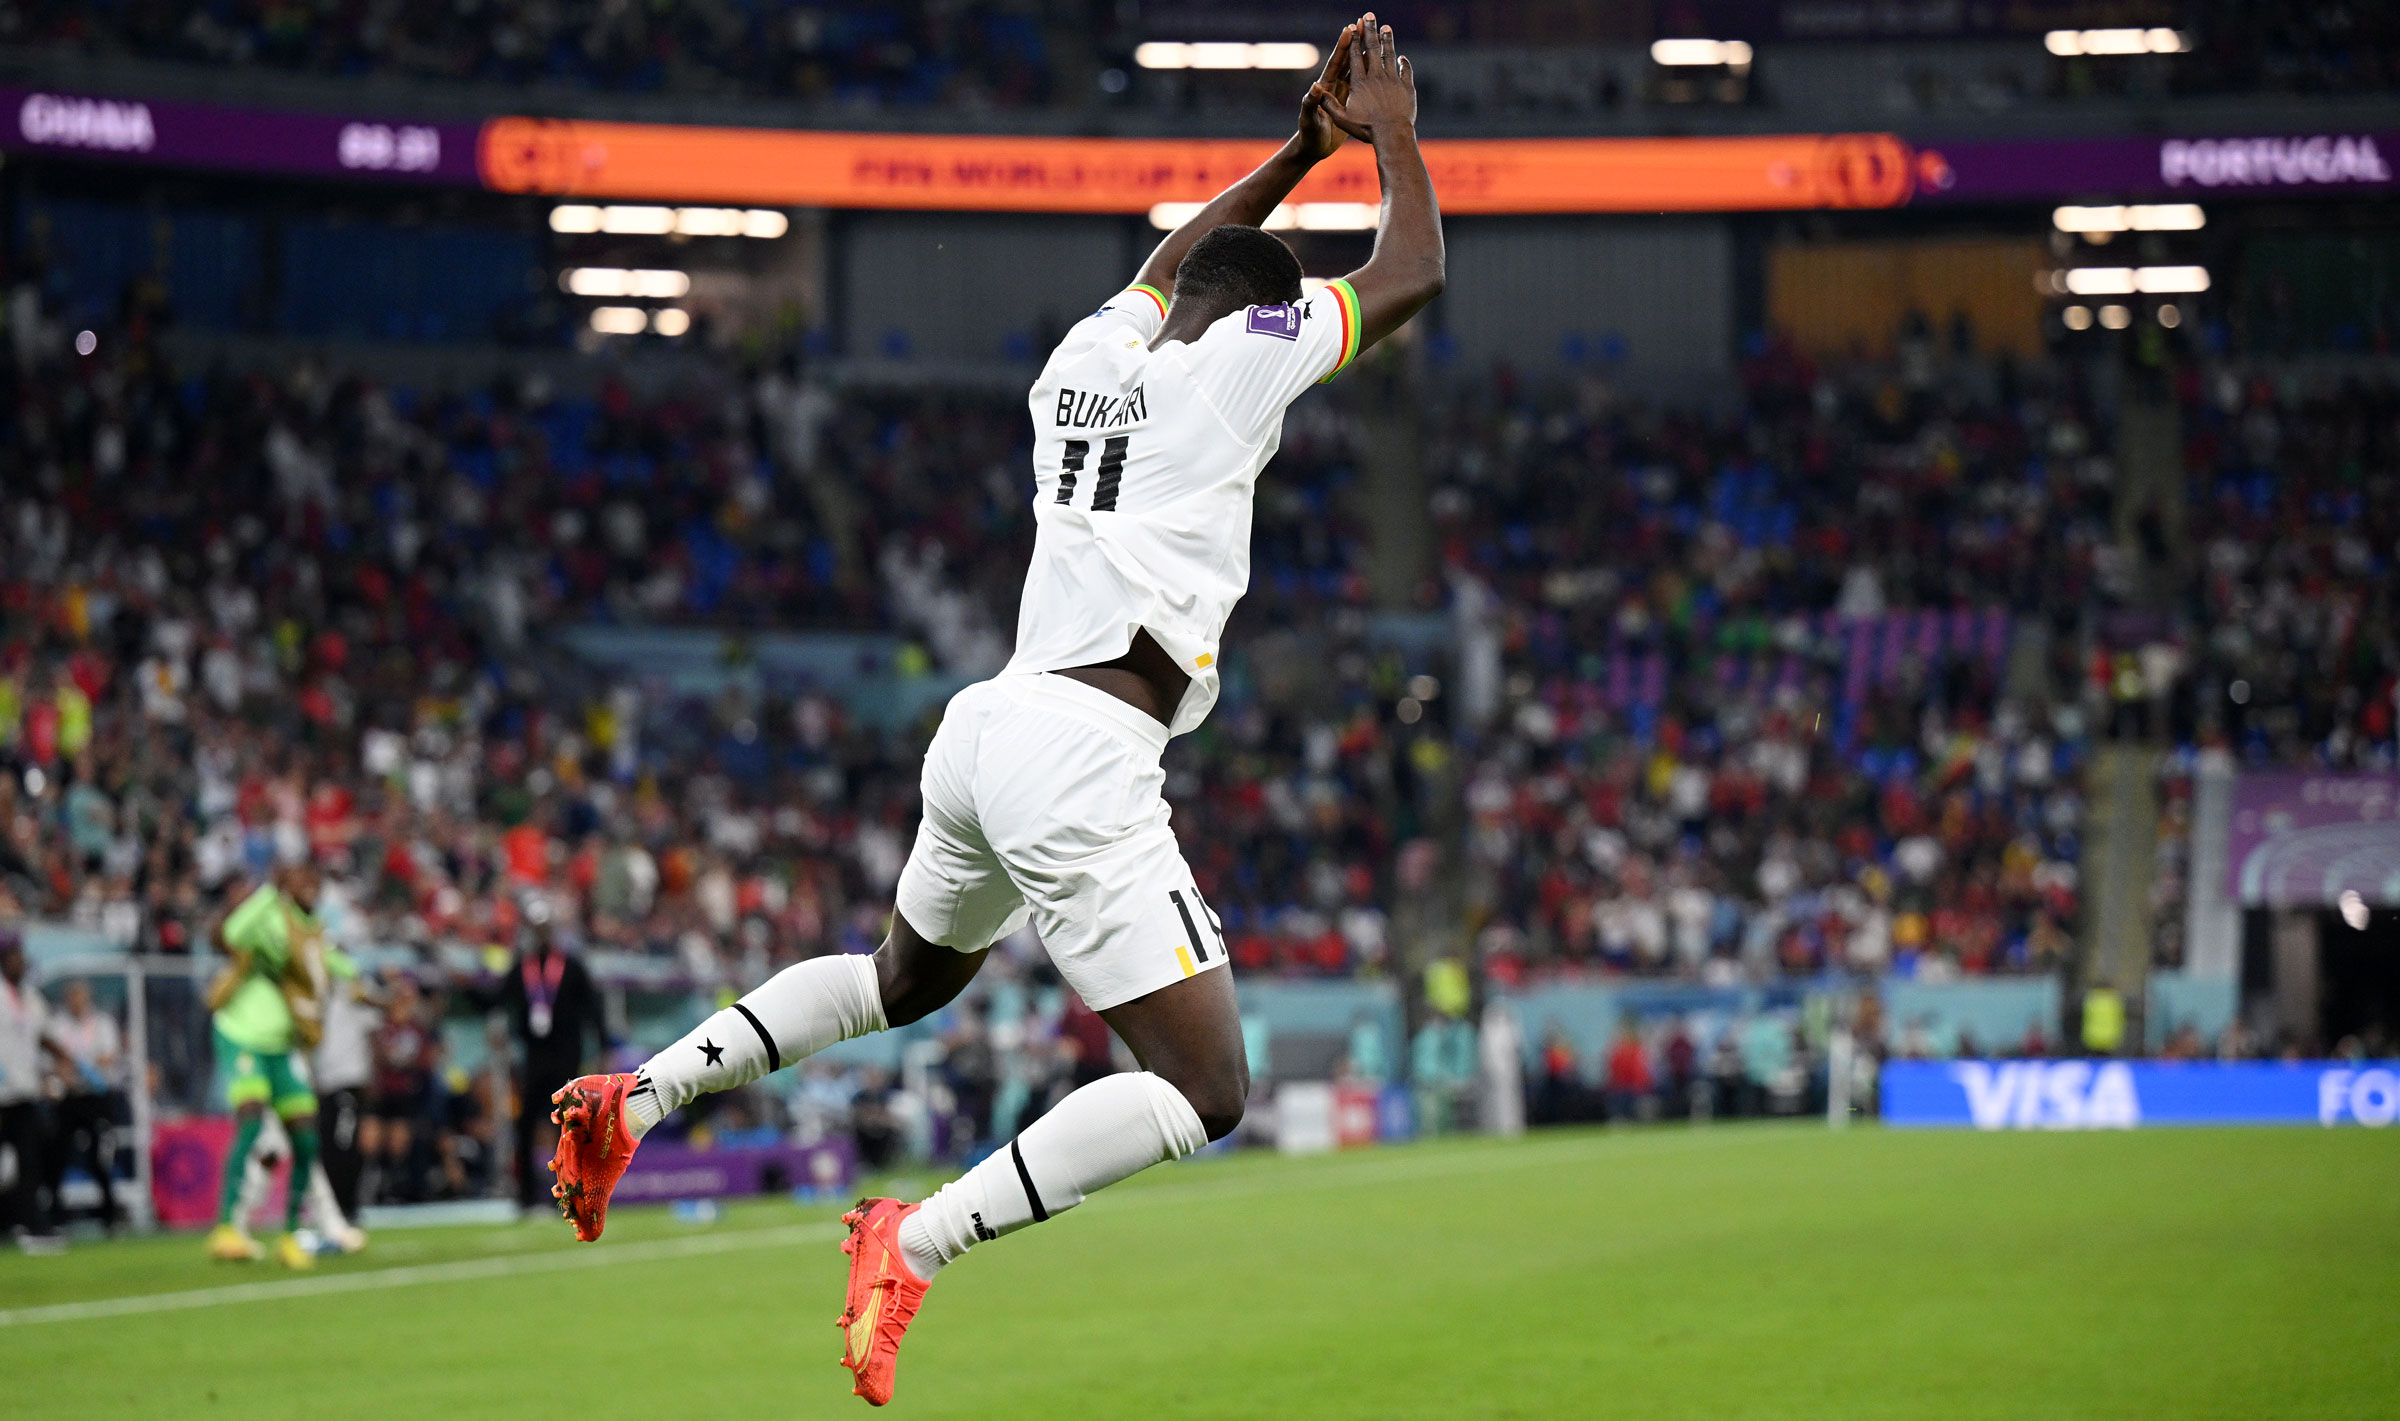 Osman Bukari celebrates after scoring Ghana's second goal.